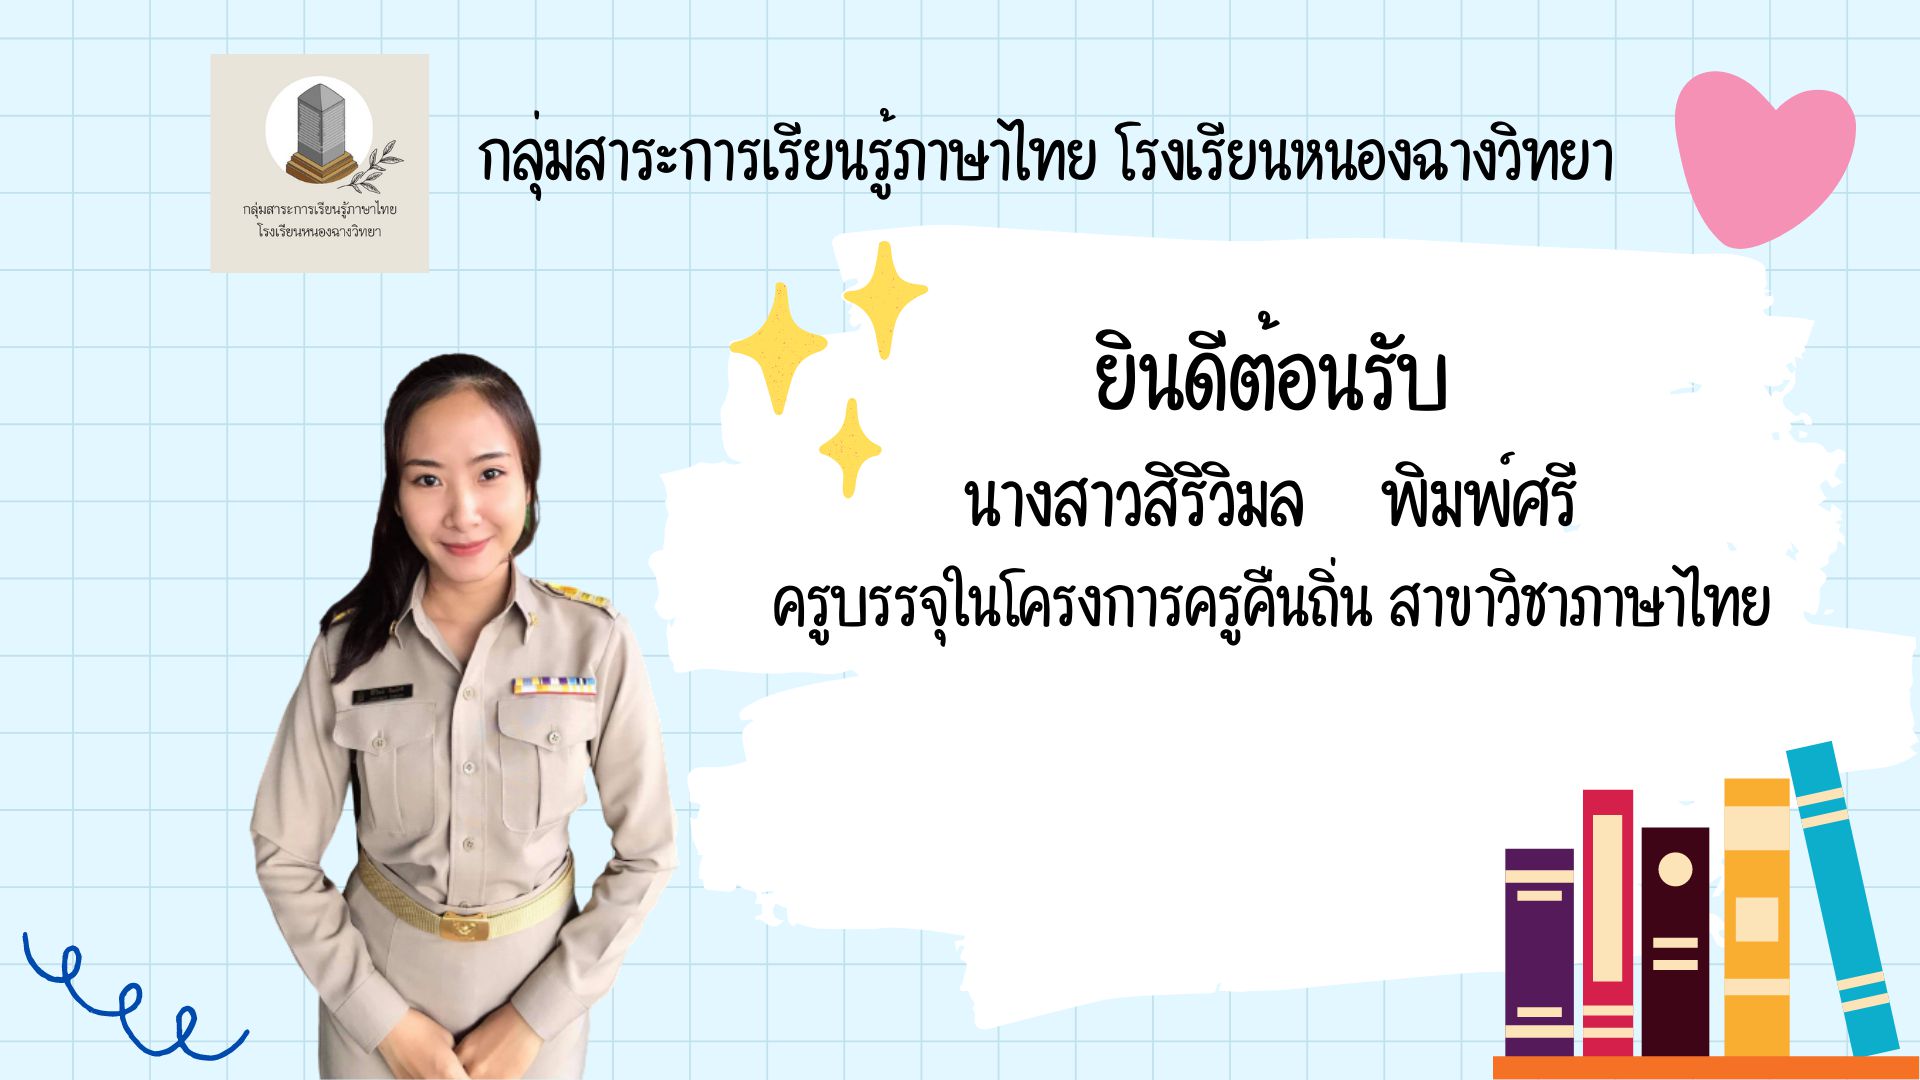 ยินดีต้อนรับนางสาวสิริวิมล พิมพ์ศรี ครูผู้ช่วย กลุ่มสาระการเรียนรู้ภาษาไทย